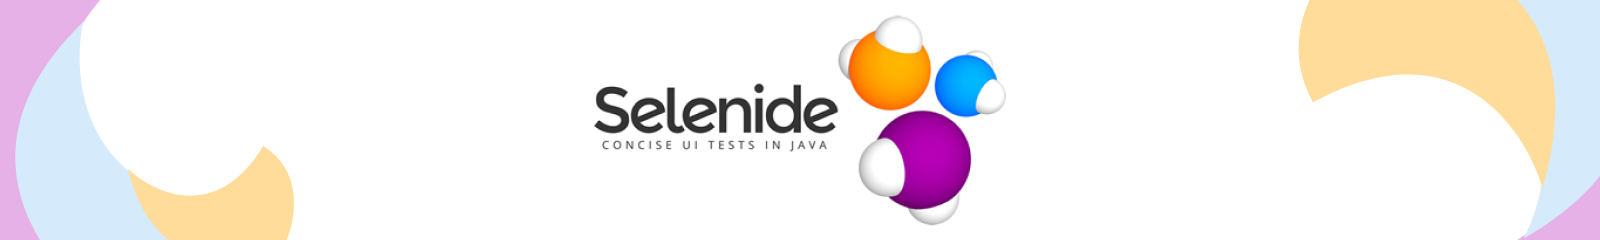 Java framework for UI testing Selenide